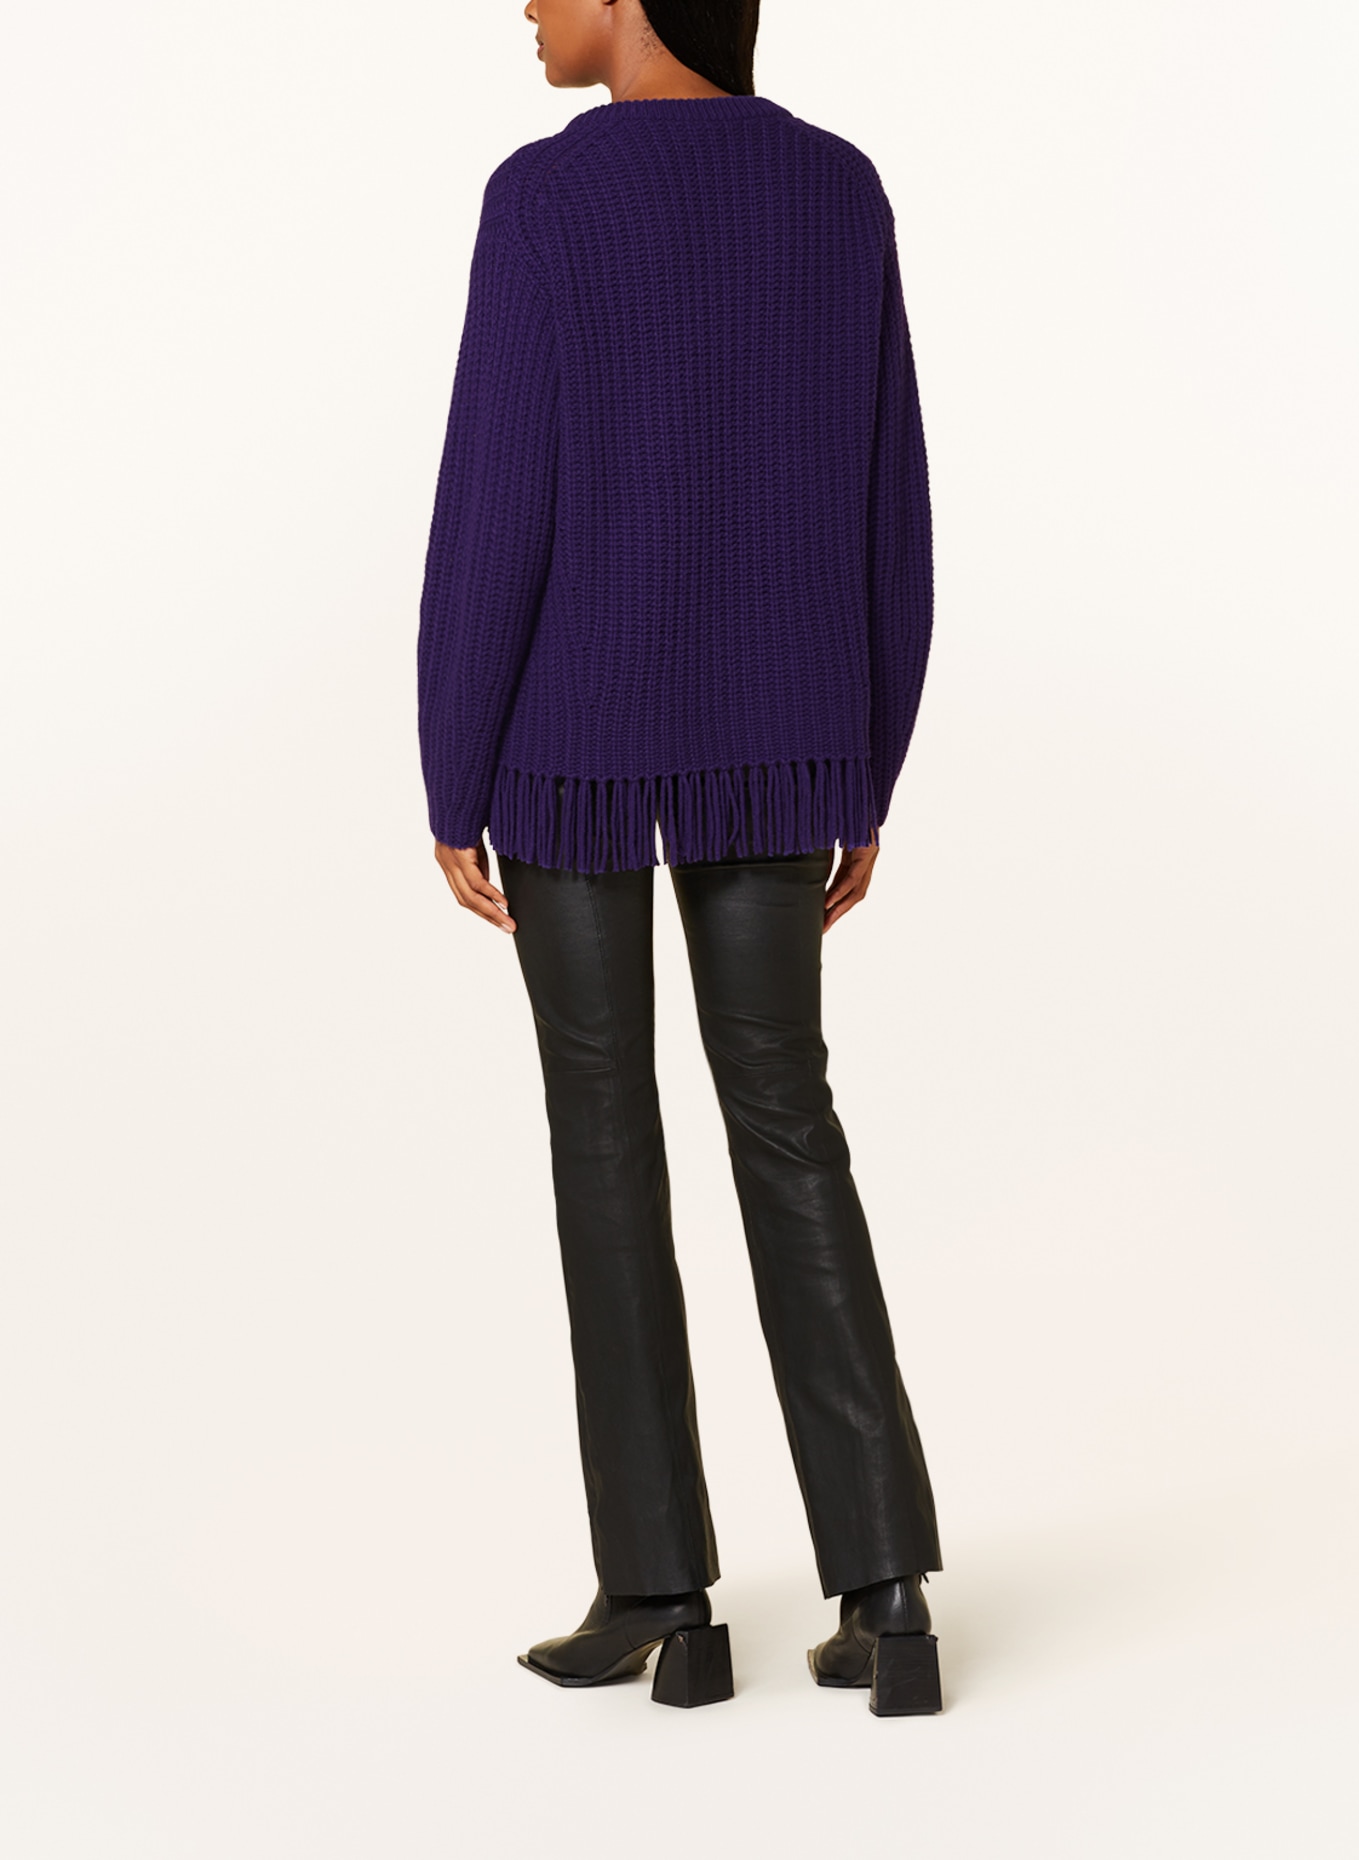 FTC CASHMERE Cashmere sweater, Color: DARK PURPLE (Image 3)